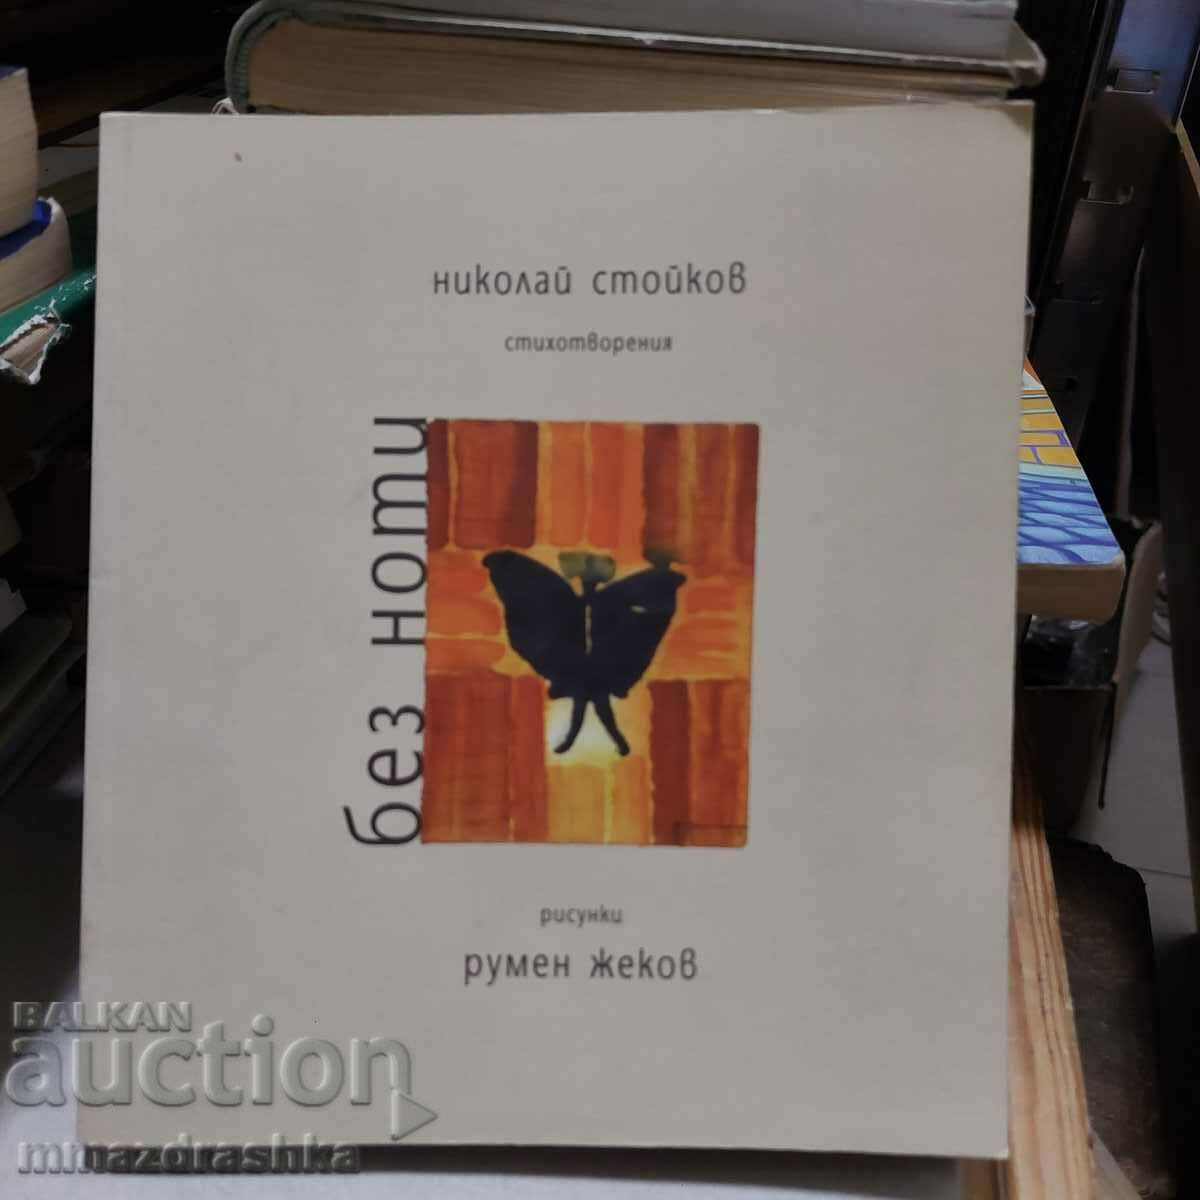 Without sheet music, Nikolay Stoykov